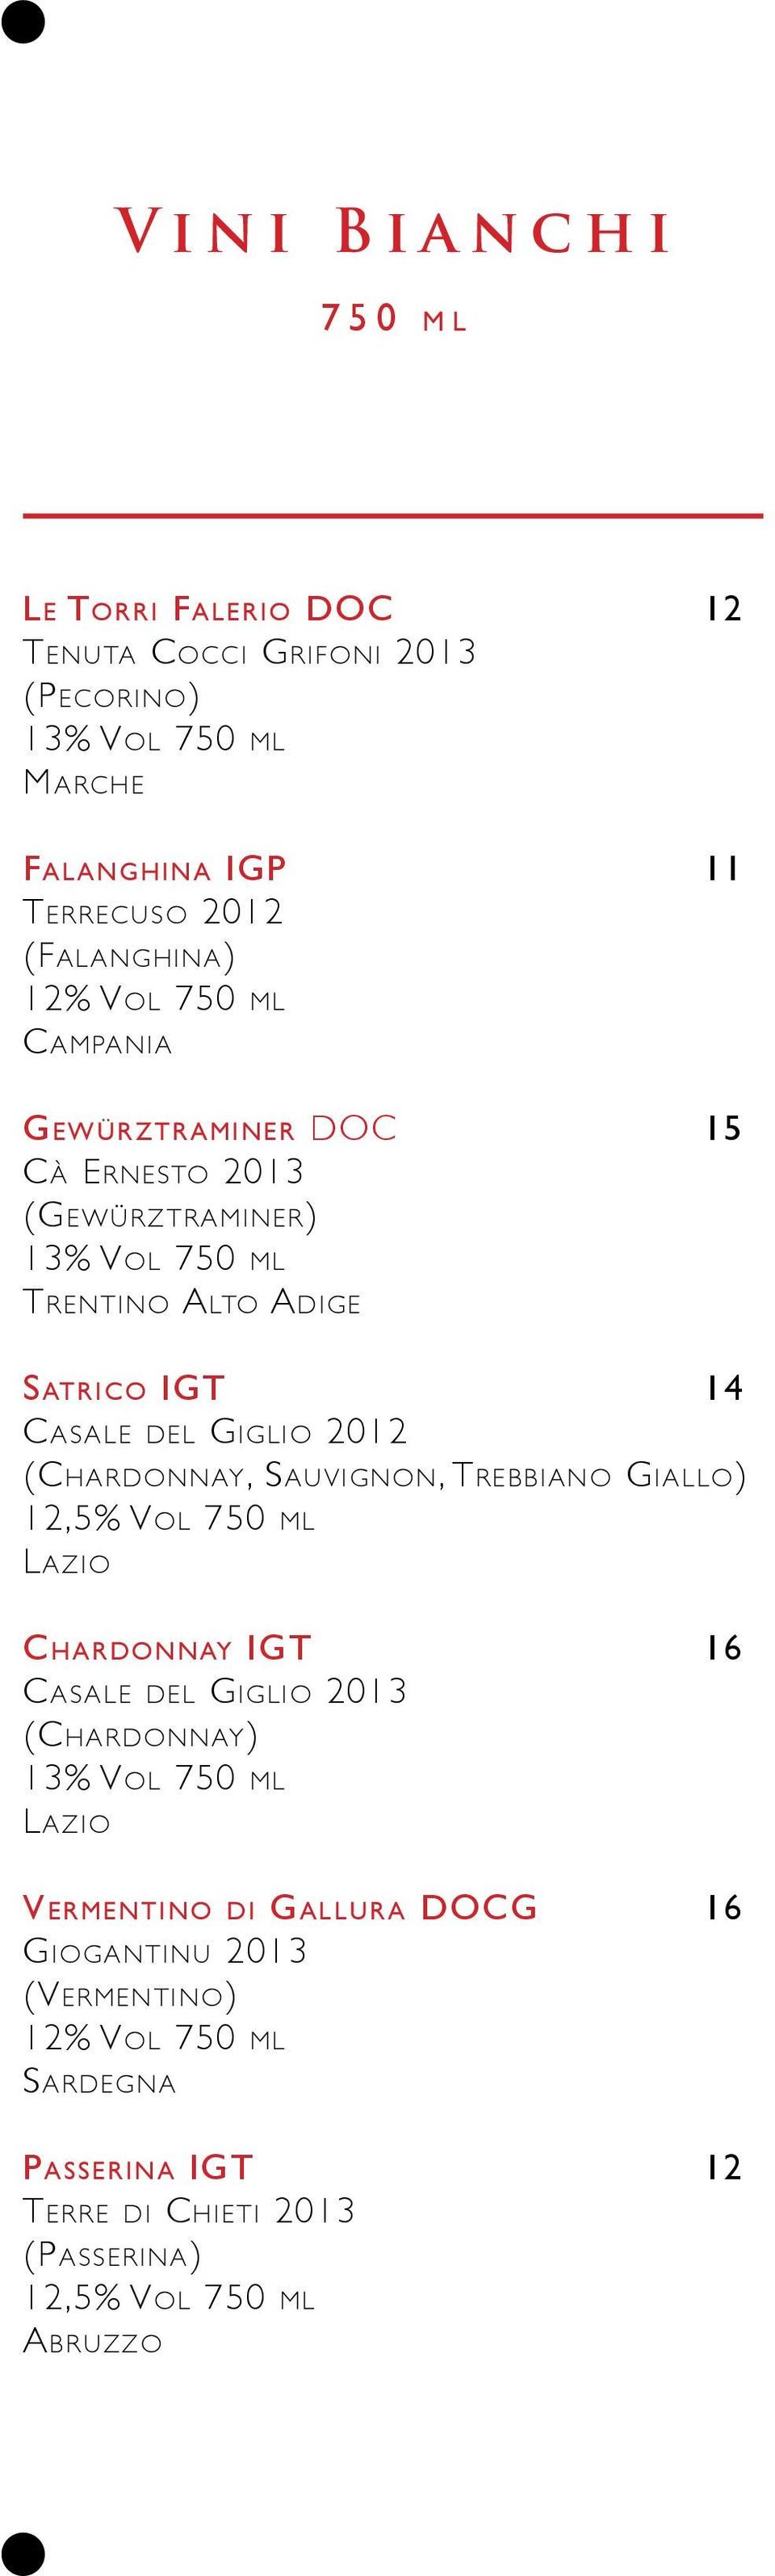 del Giglio 2012 (Chardonnay, Sauvignon, Trebbiano Giallo) 12,5% Vol 750 ml Lazio Chardonnay IGT 16 Casale del Giglio 2013 (Chardonnay) 13% Vol 750 ml